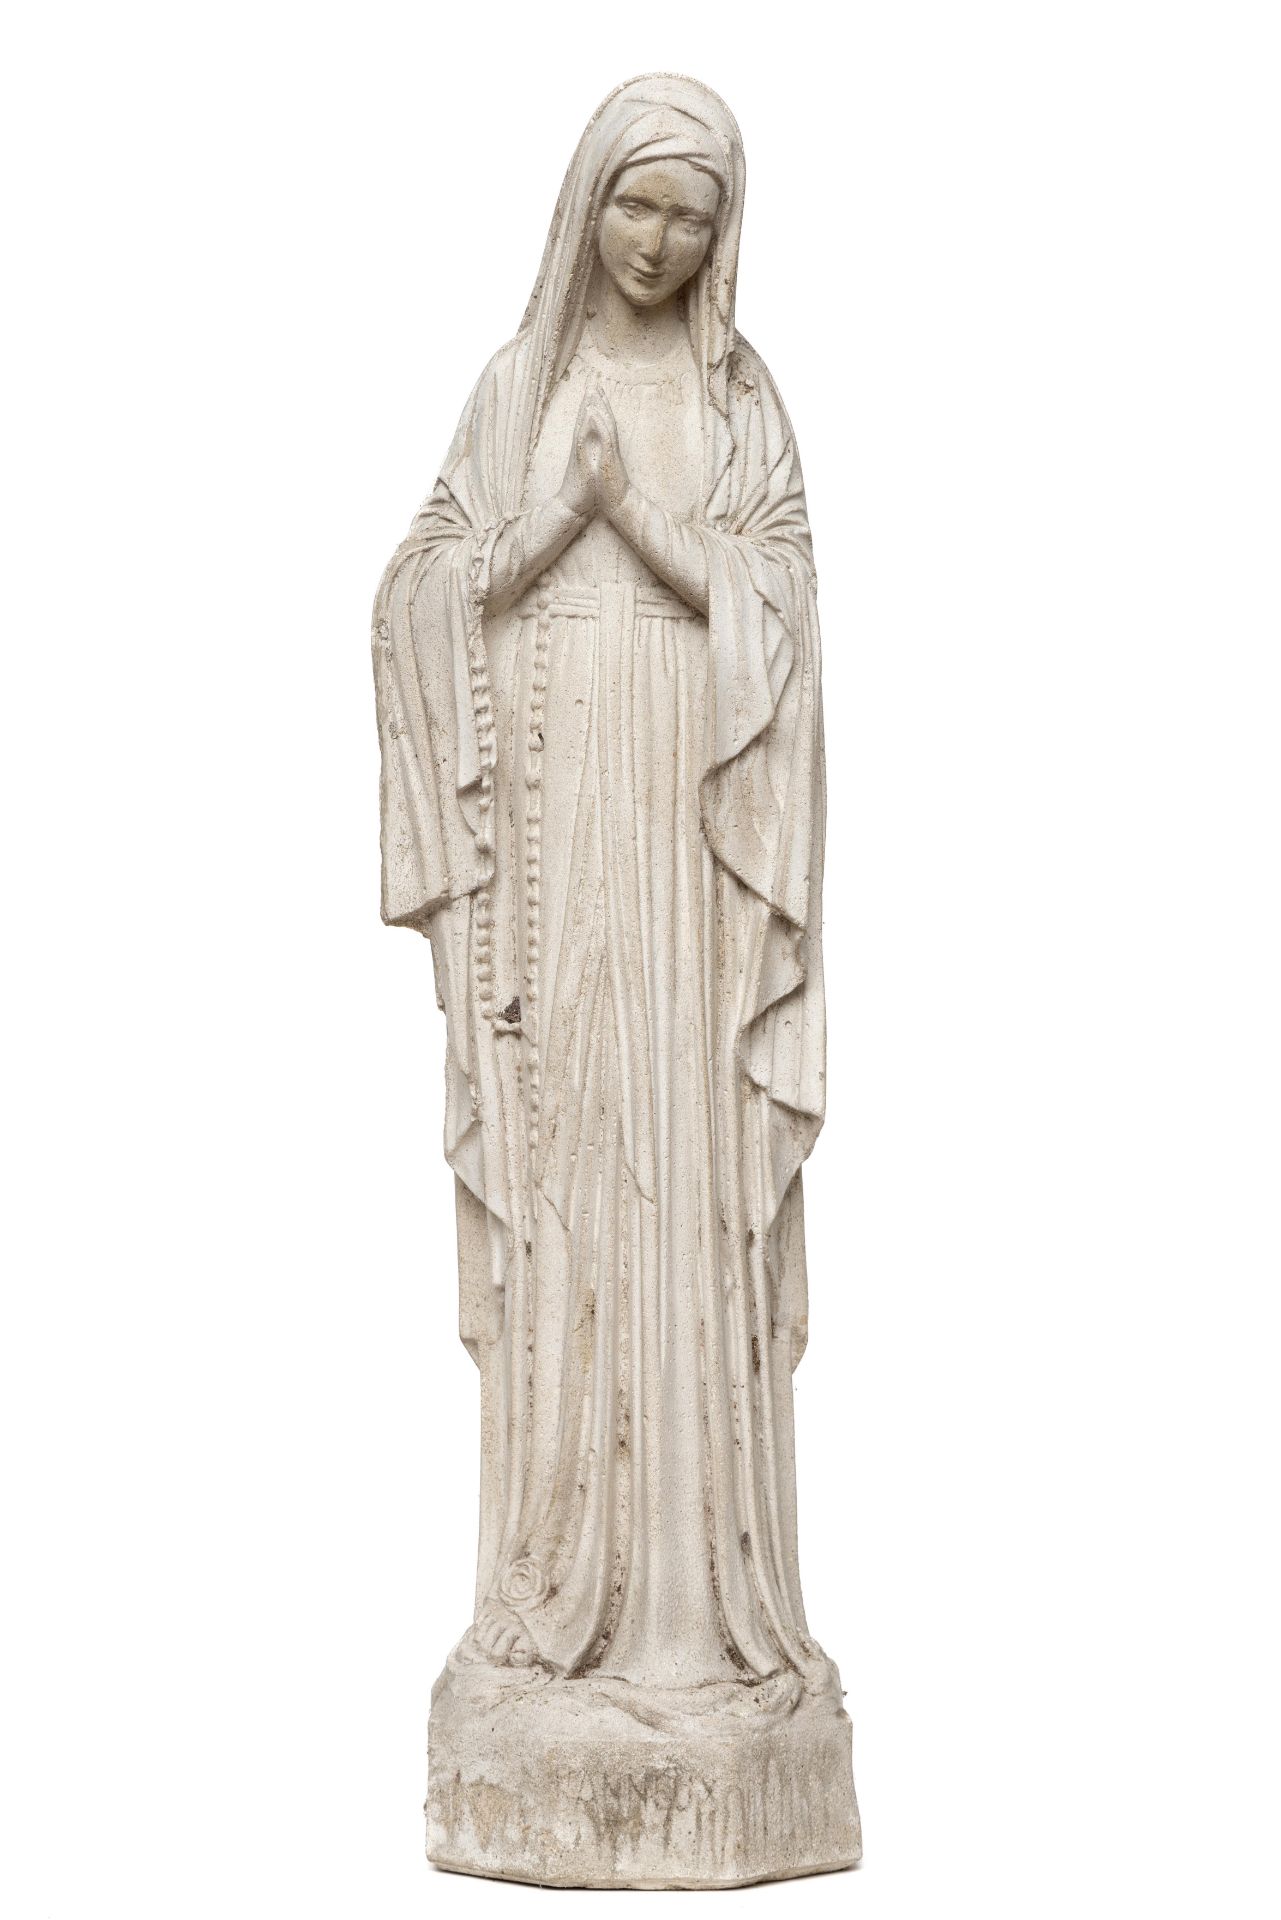 Betonnen gegoten sculptuur van de heilige Maria.